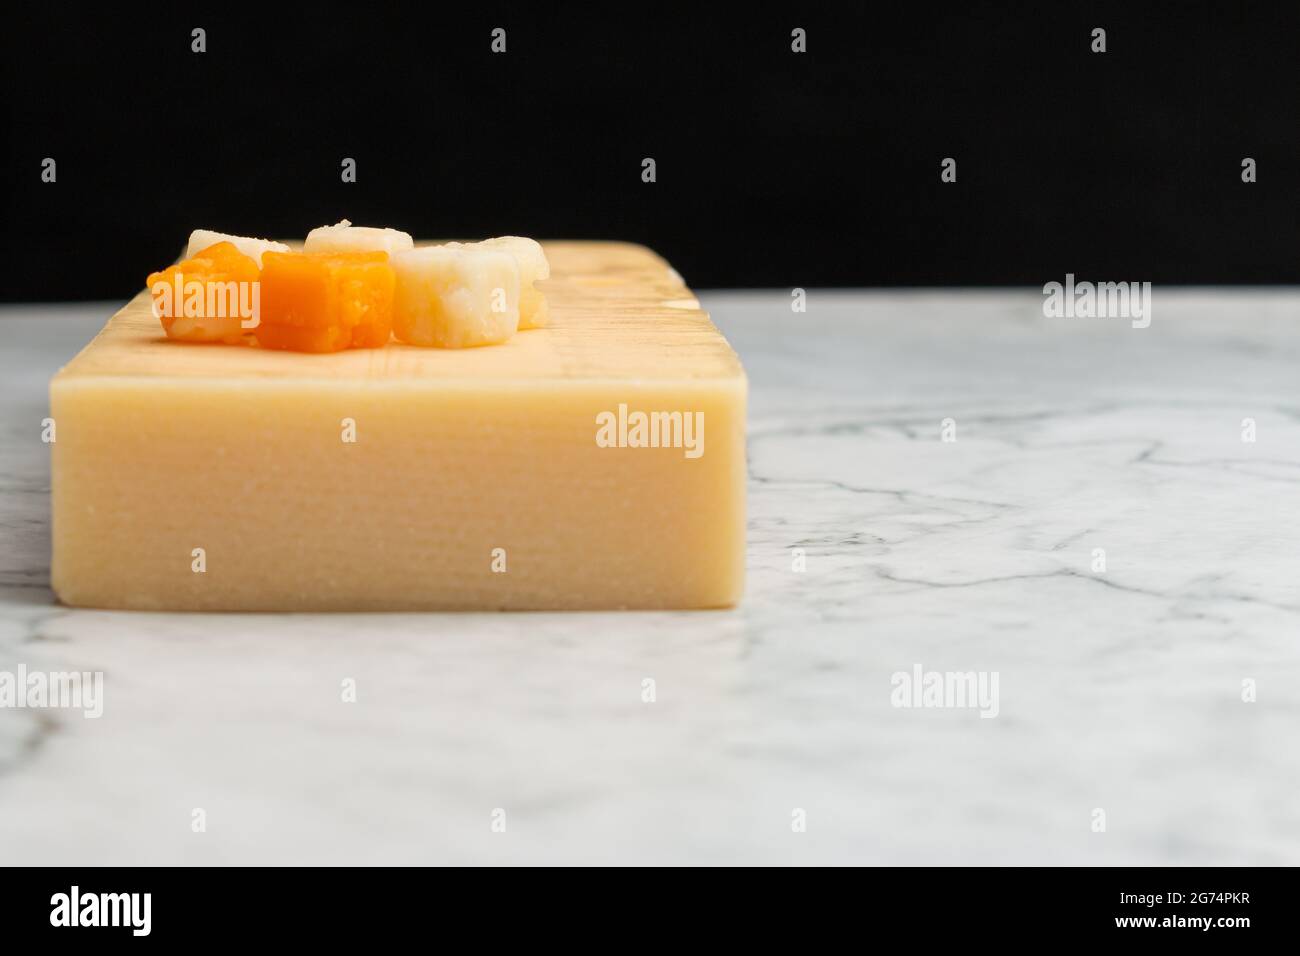 Nahaufnahme eines gelben Cheddar-Käses mit kleinen Käsequadraten auf einer Marmoroberfläche Stockfoto